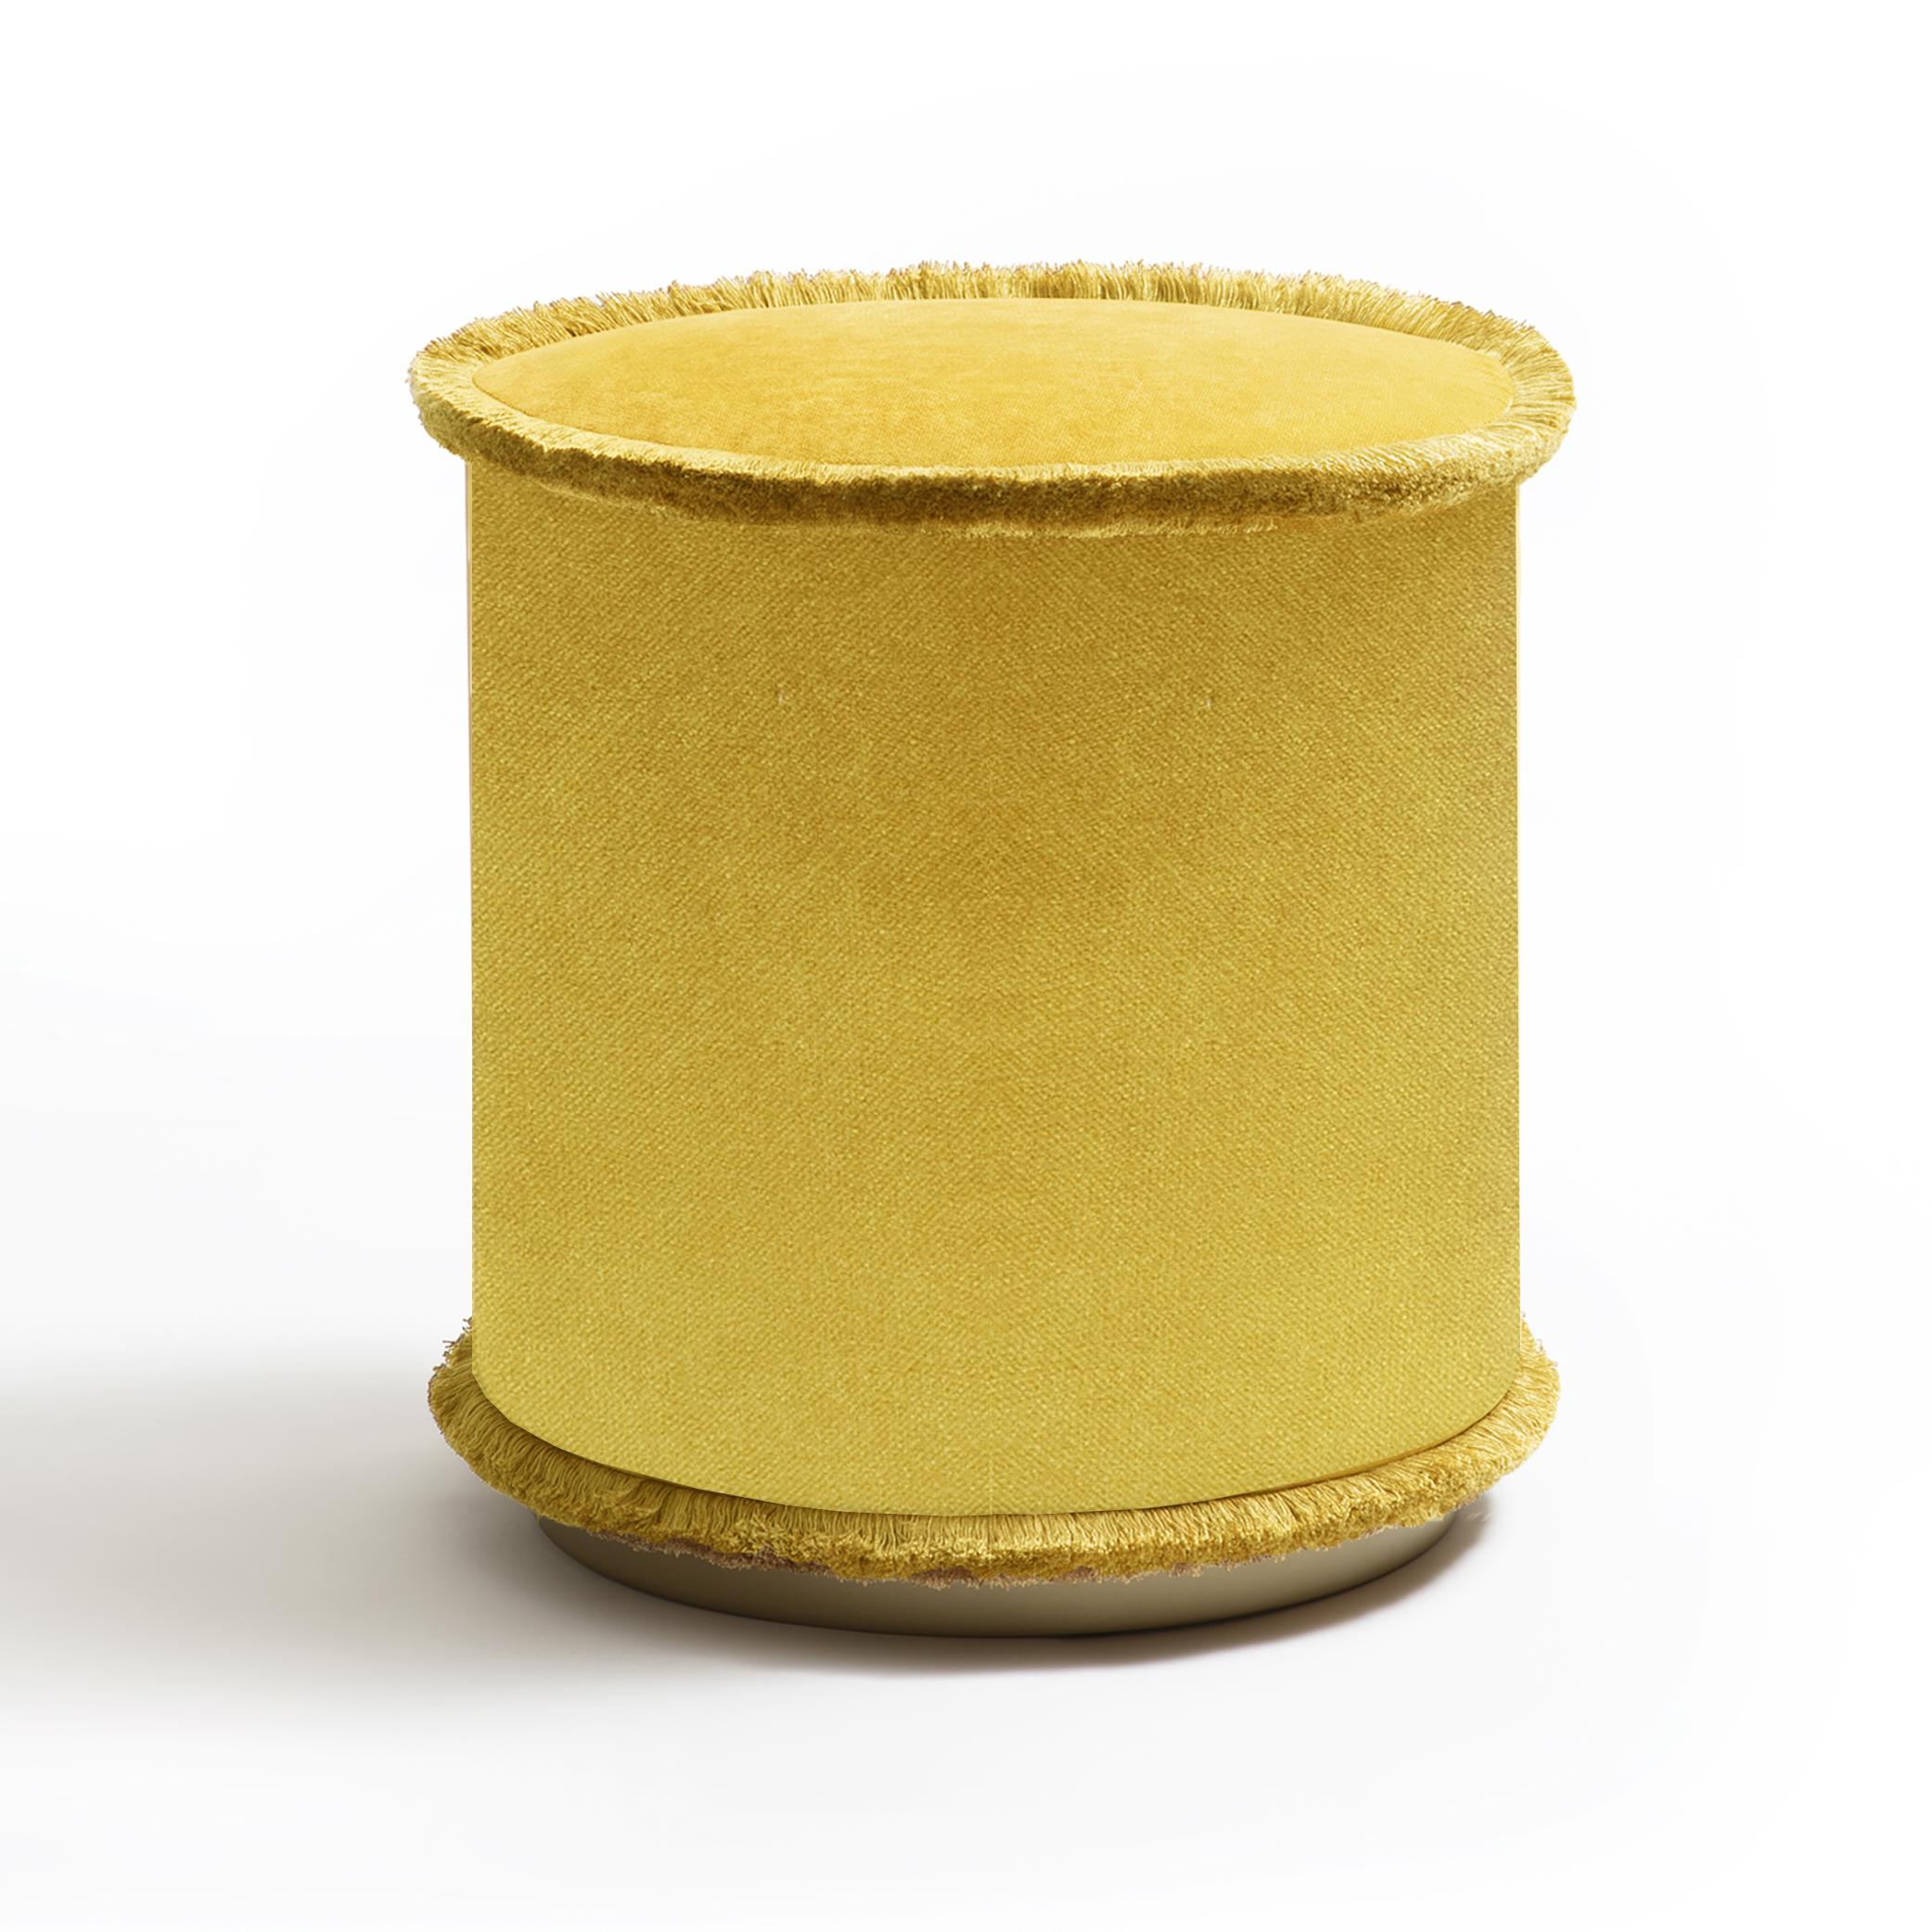 Pouf IL  Tone on Tone est la collection de poufs dans les tons vert, brique, moutarde et beige. Ces poufs raffinés embellissent tout environnement grâce à leur design simple et compact. Le pouf IL, qui confère un attrait naturel à tout espace, est